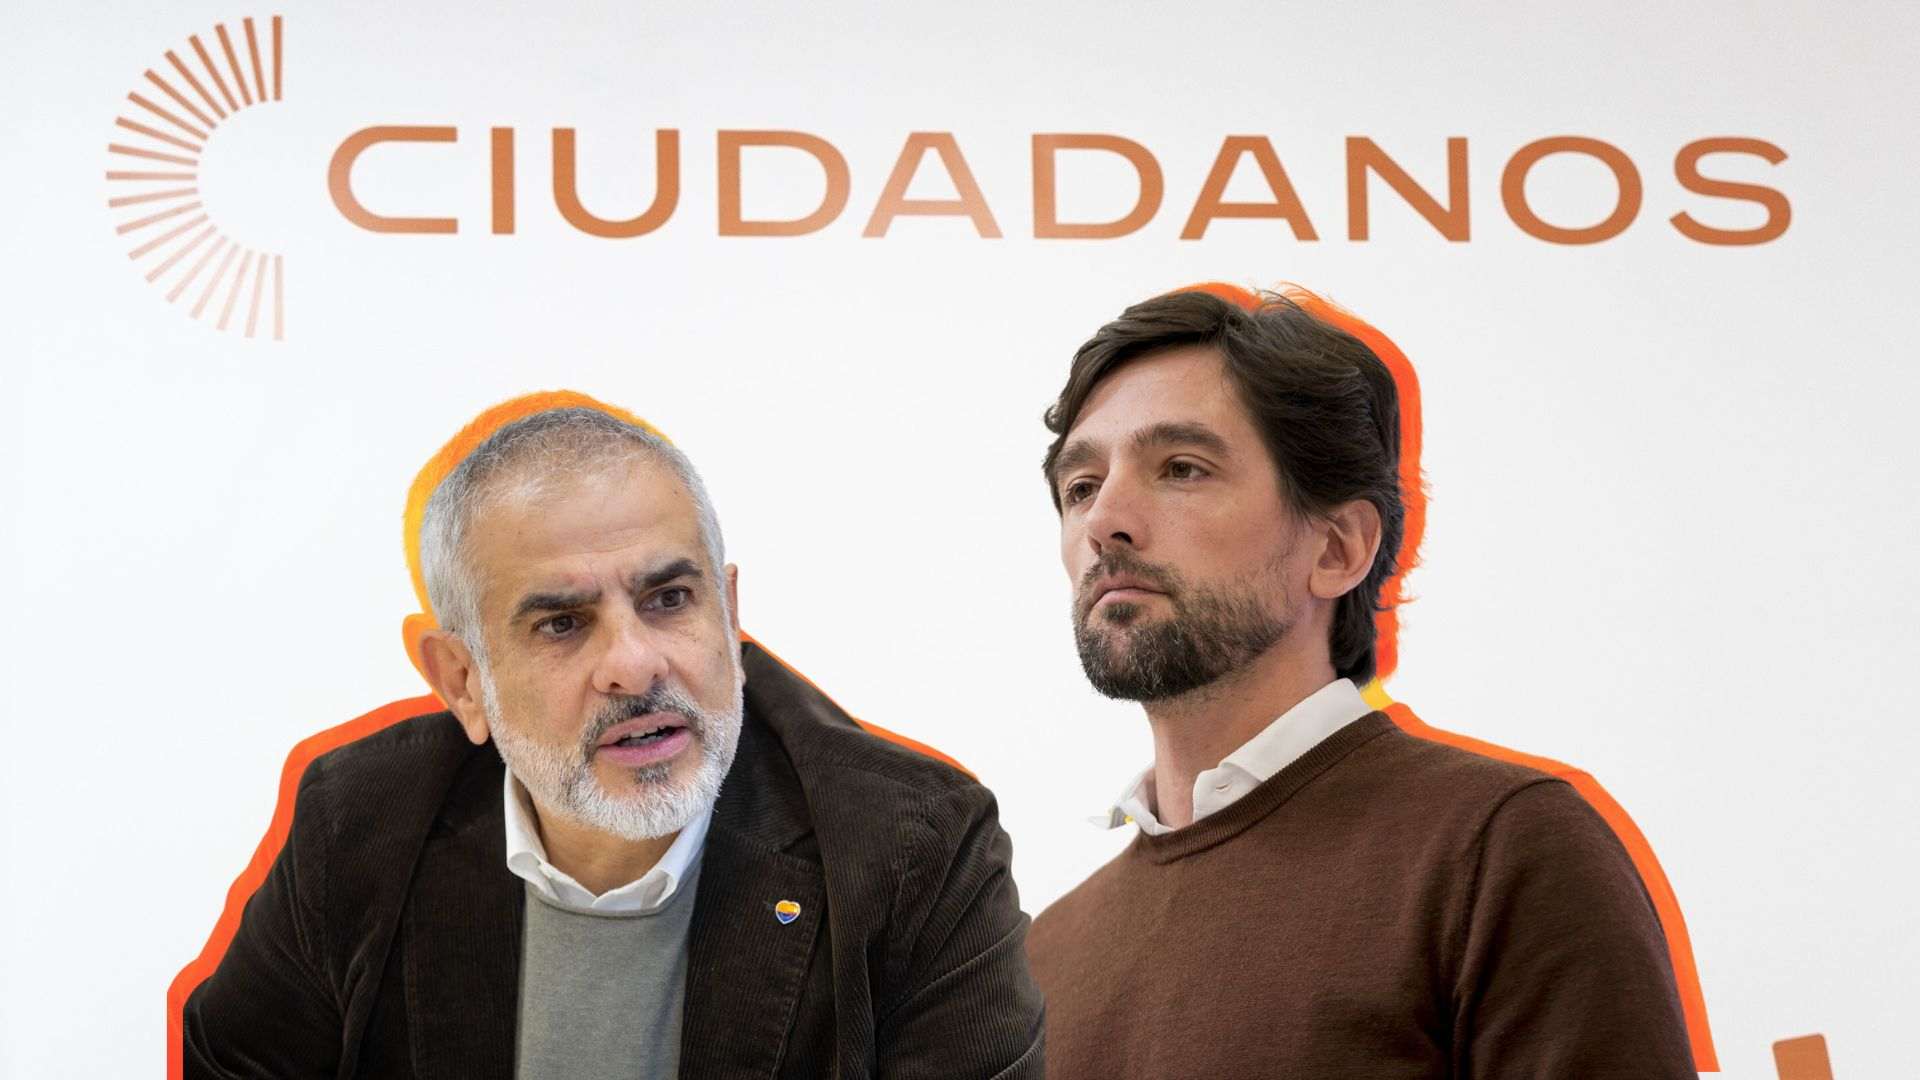 La reacción furibunda de Ciudadanos por la reunión entre Yolanda Díaz y Puigdemont